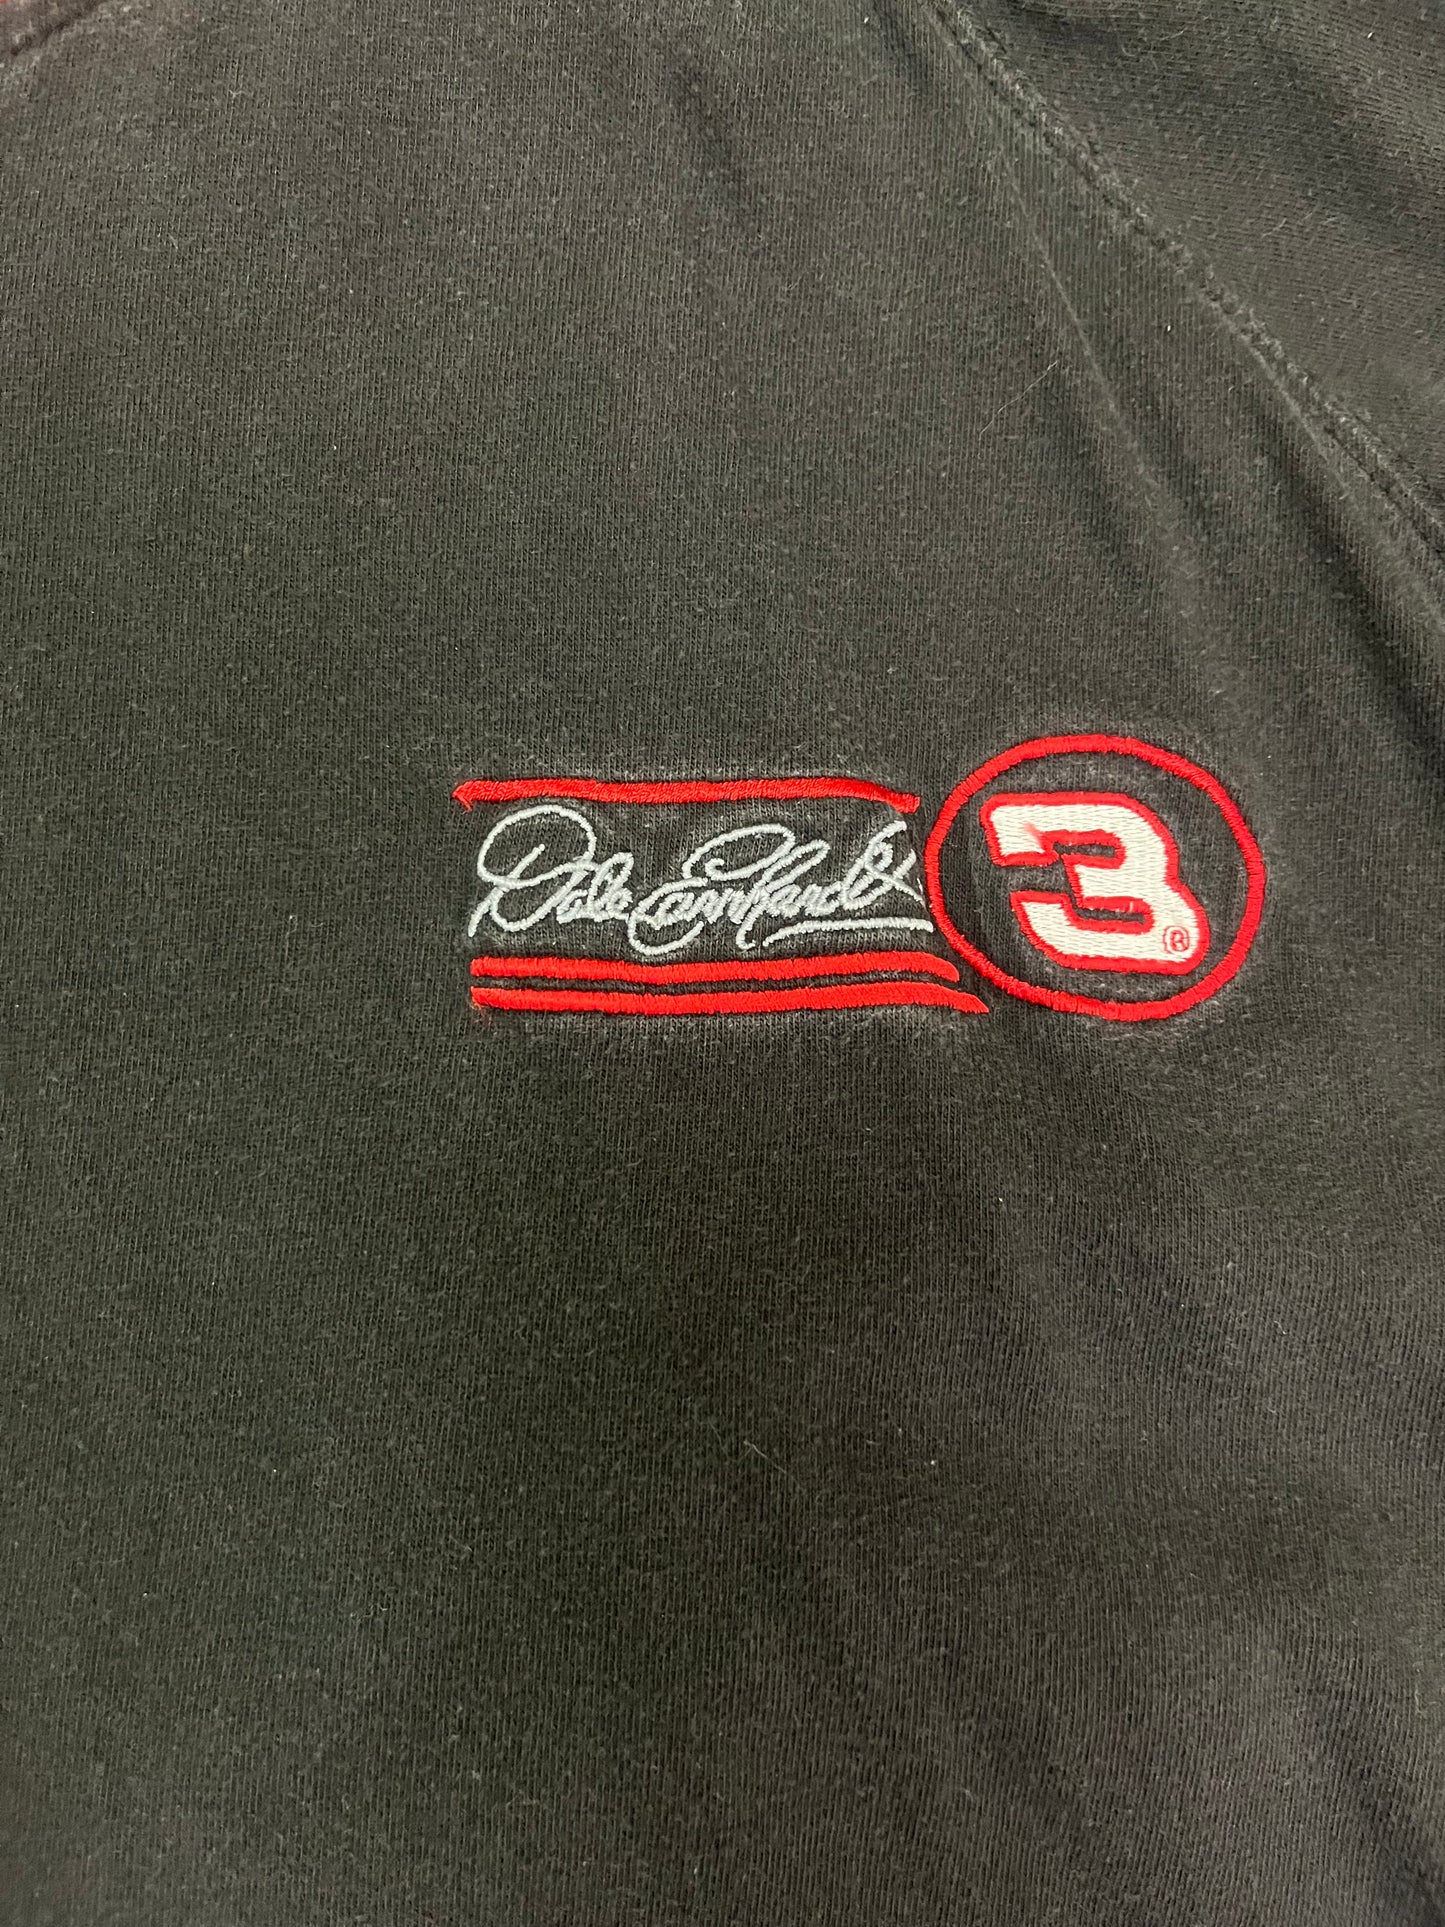 Vintage Dale Earnhardt NASCAR Shirt